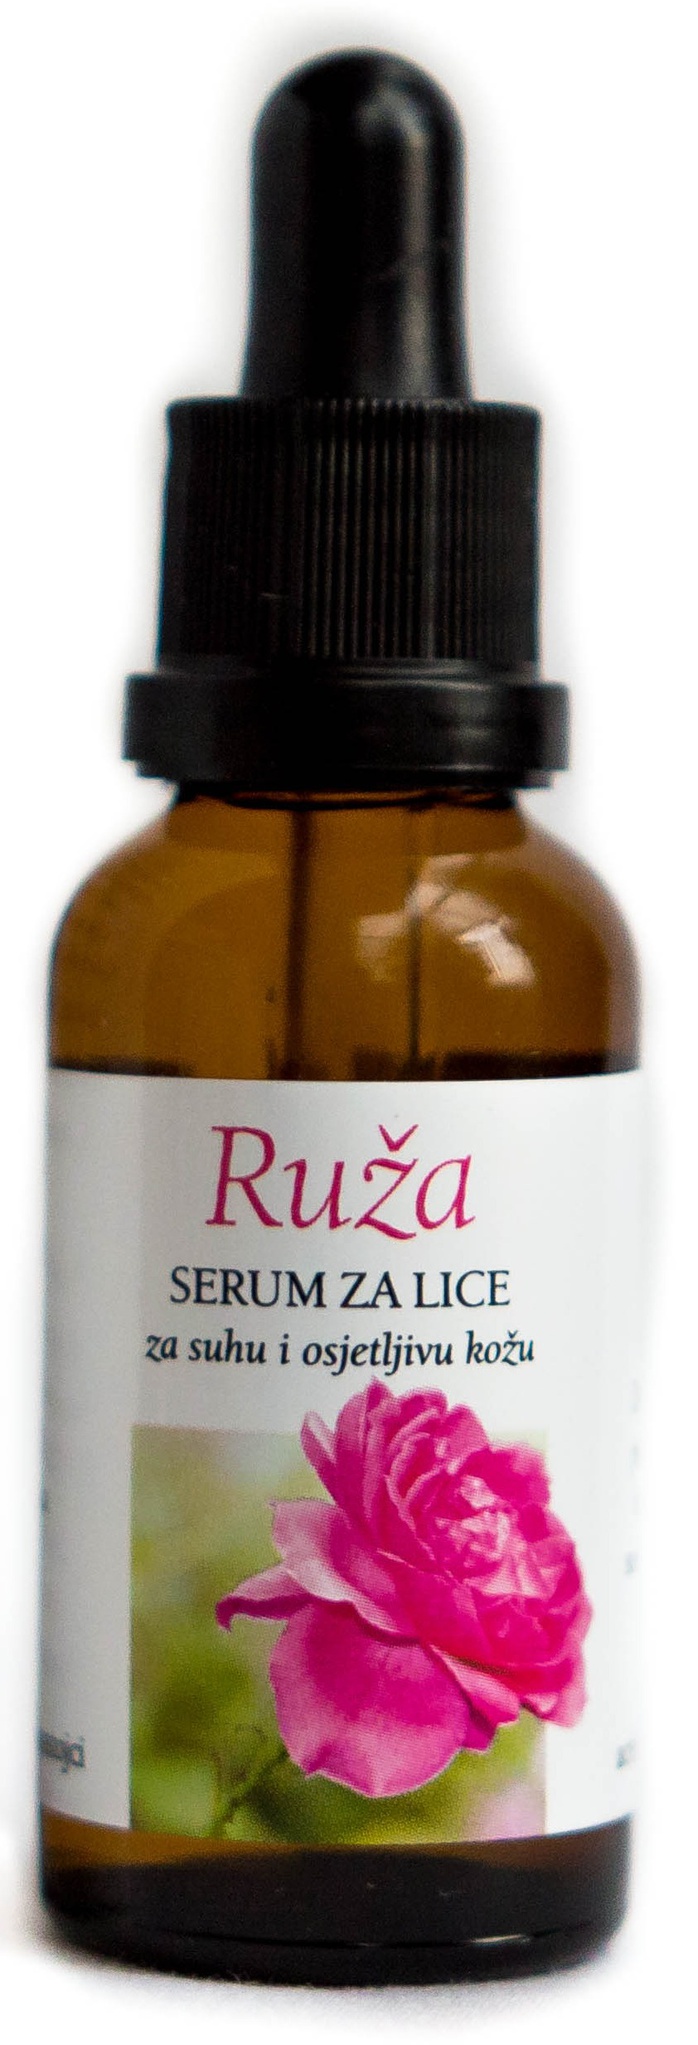 Aromatica Ruza Serum Za Lice